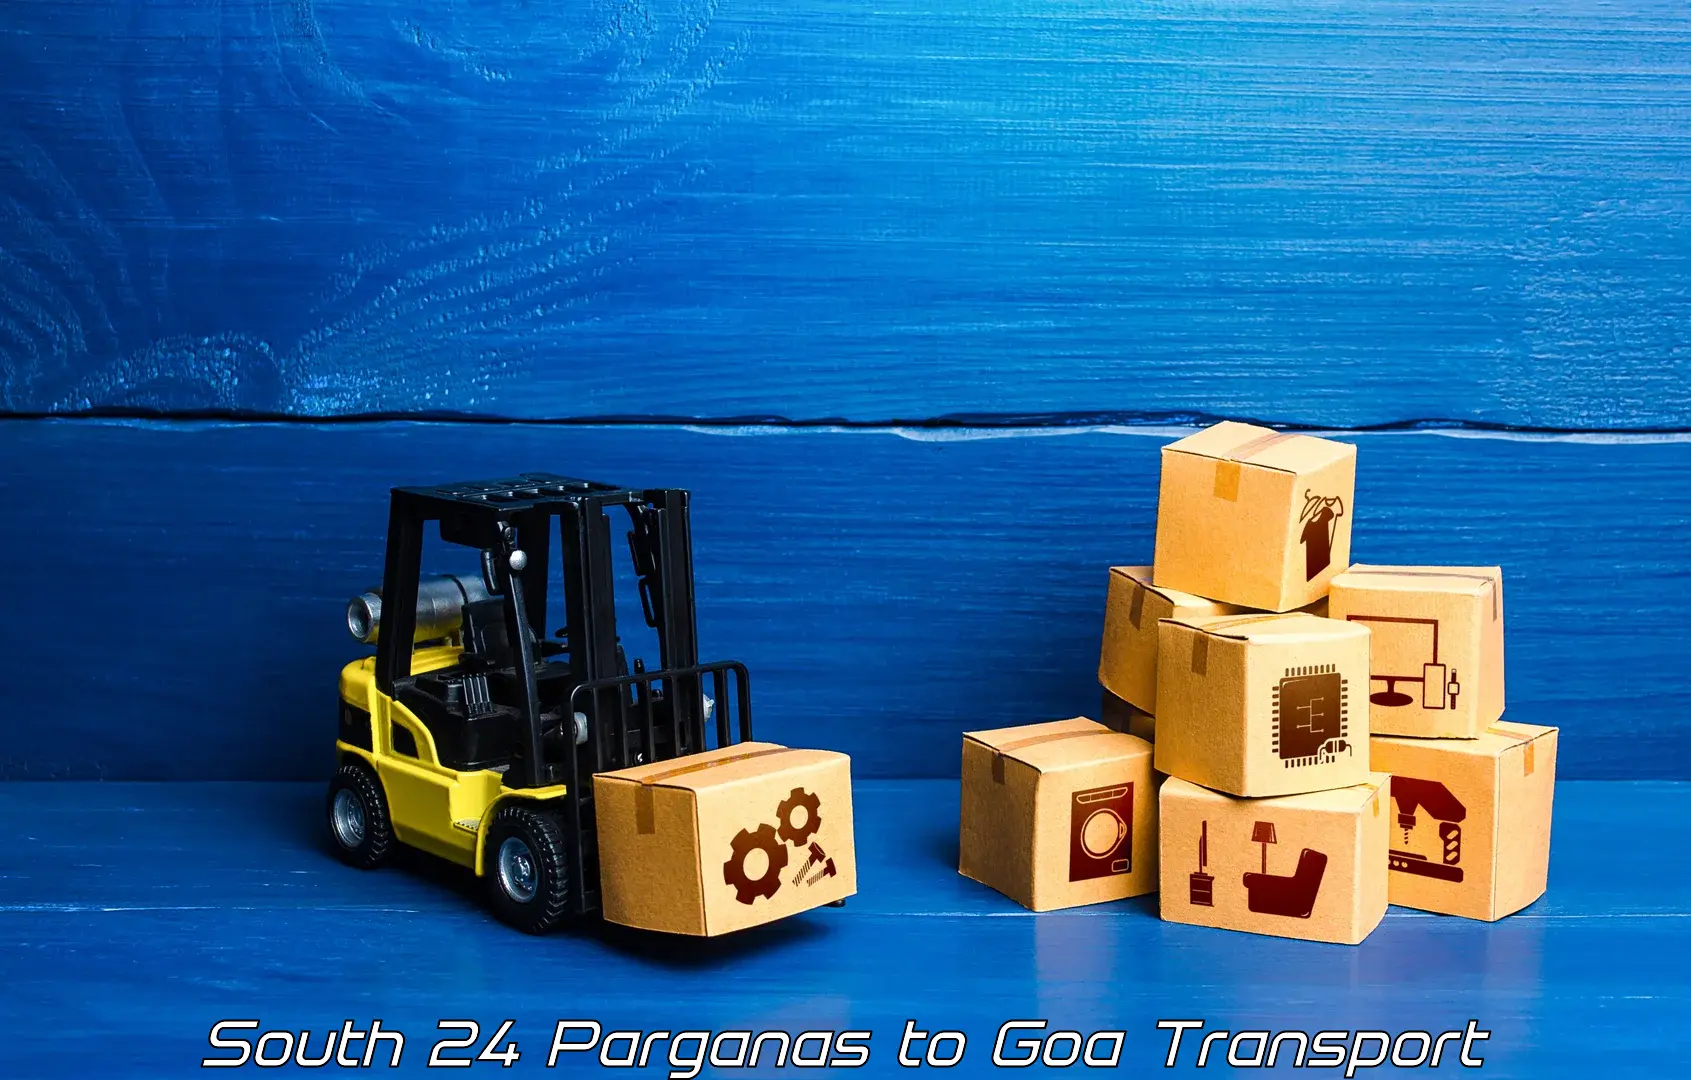 Cargo train transport services South 24 Parganas to Mormugao Port